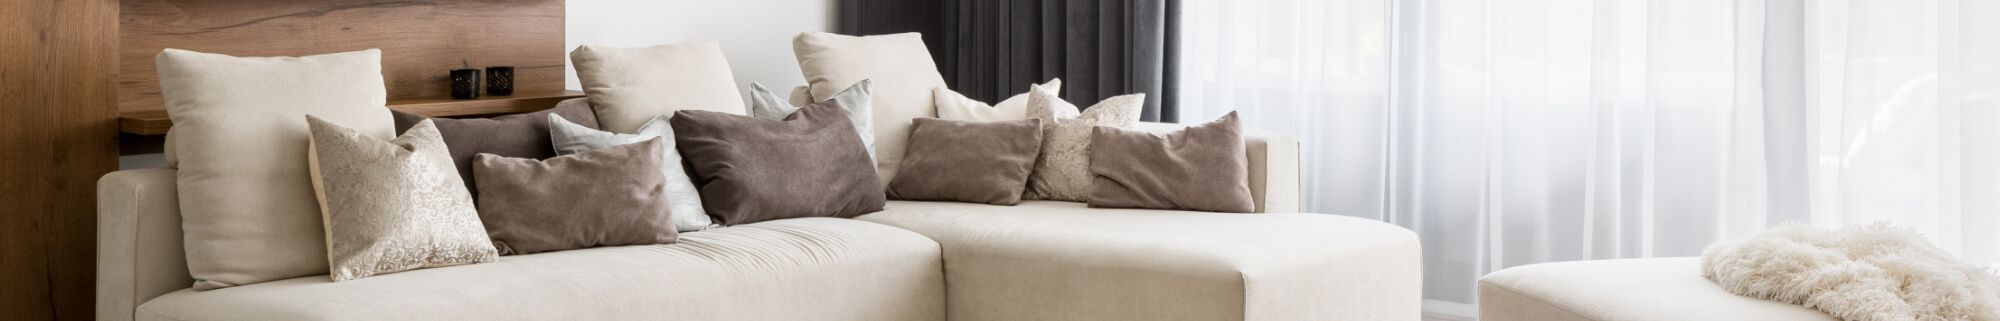 Trend Spotlight: The Long Lumbar Pillow  Copy